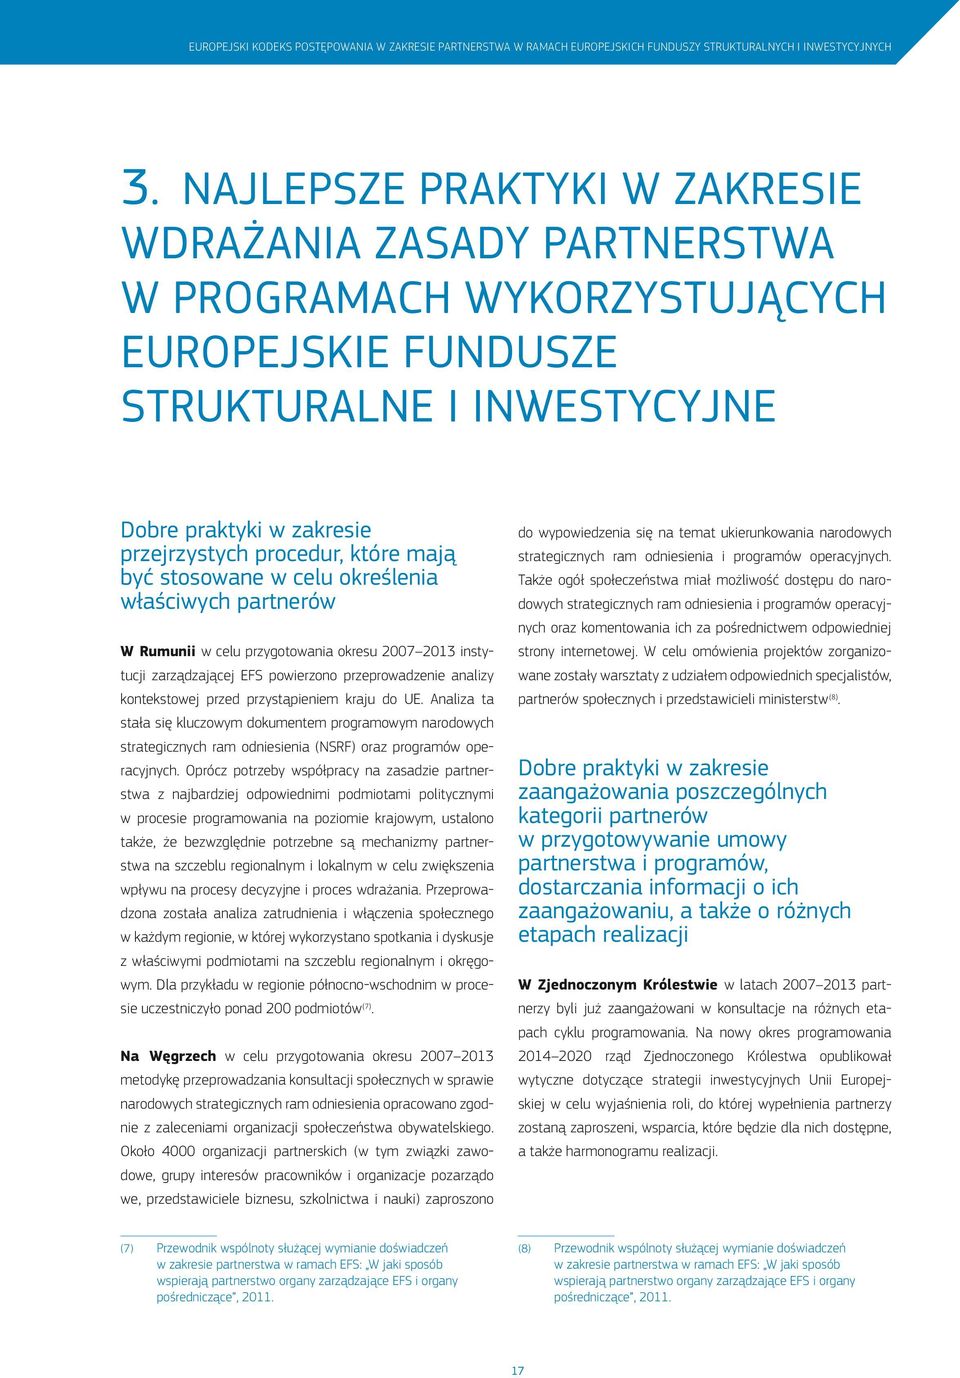 być stosowane w celu określenia właściwych partnerów W Rumunii w celu przygotowania okresu 2007 2013 instytucji zarządzającej EFS powierzono przeprowadzenie analizy kontekstowej przed przystąpieniem